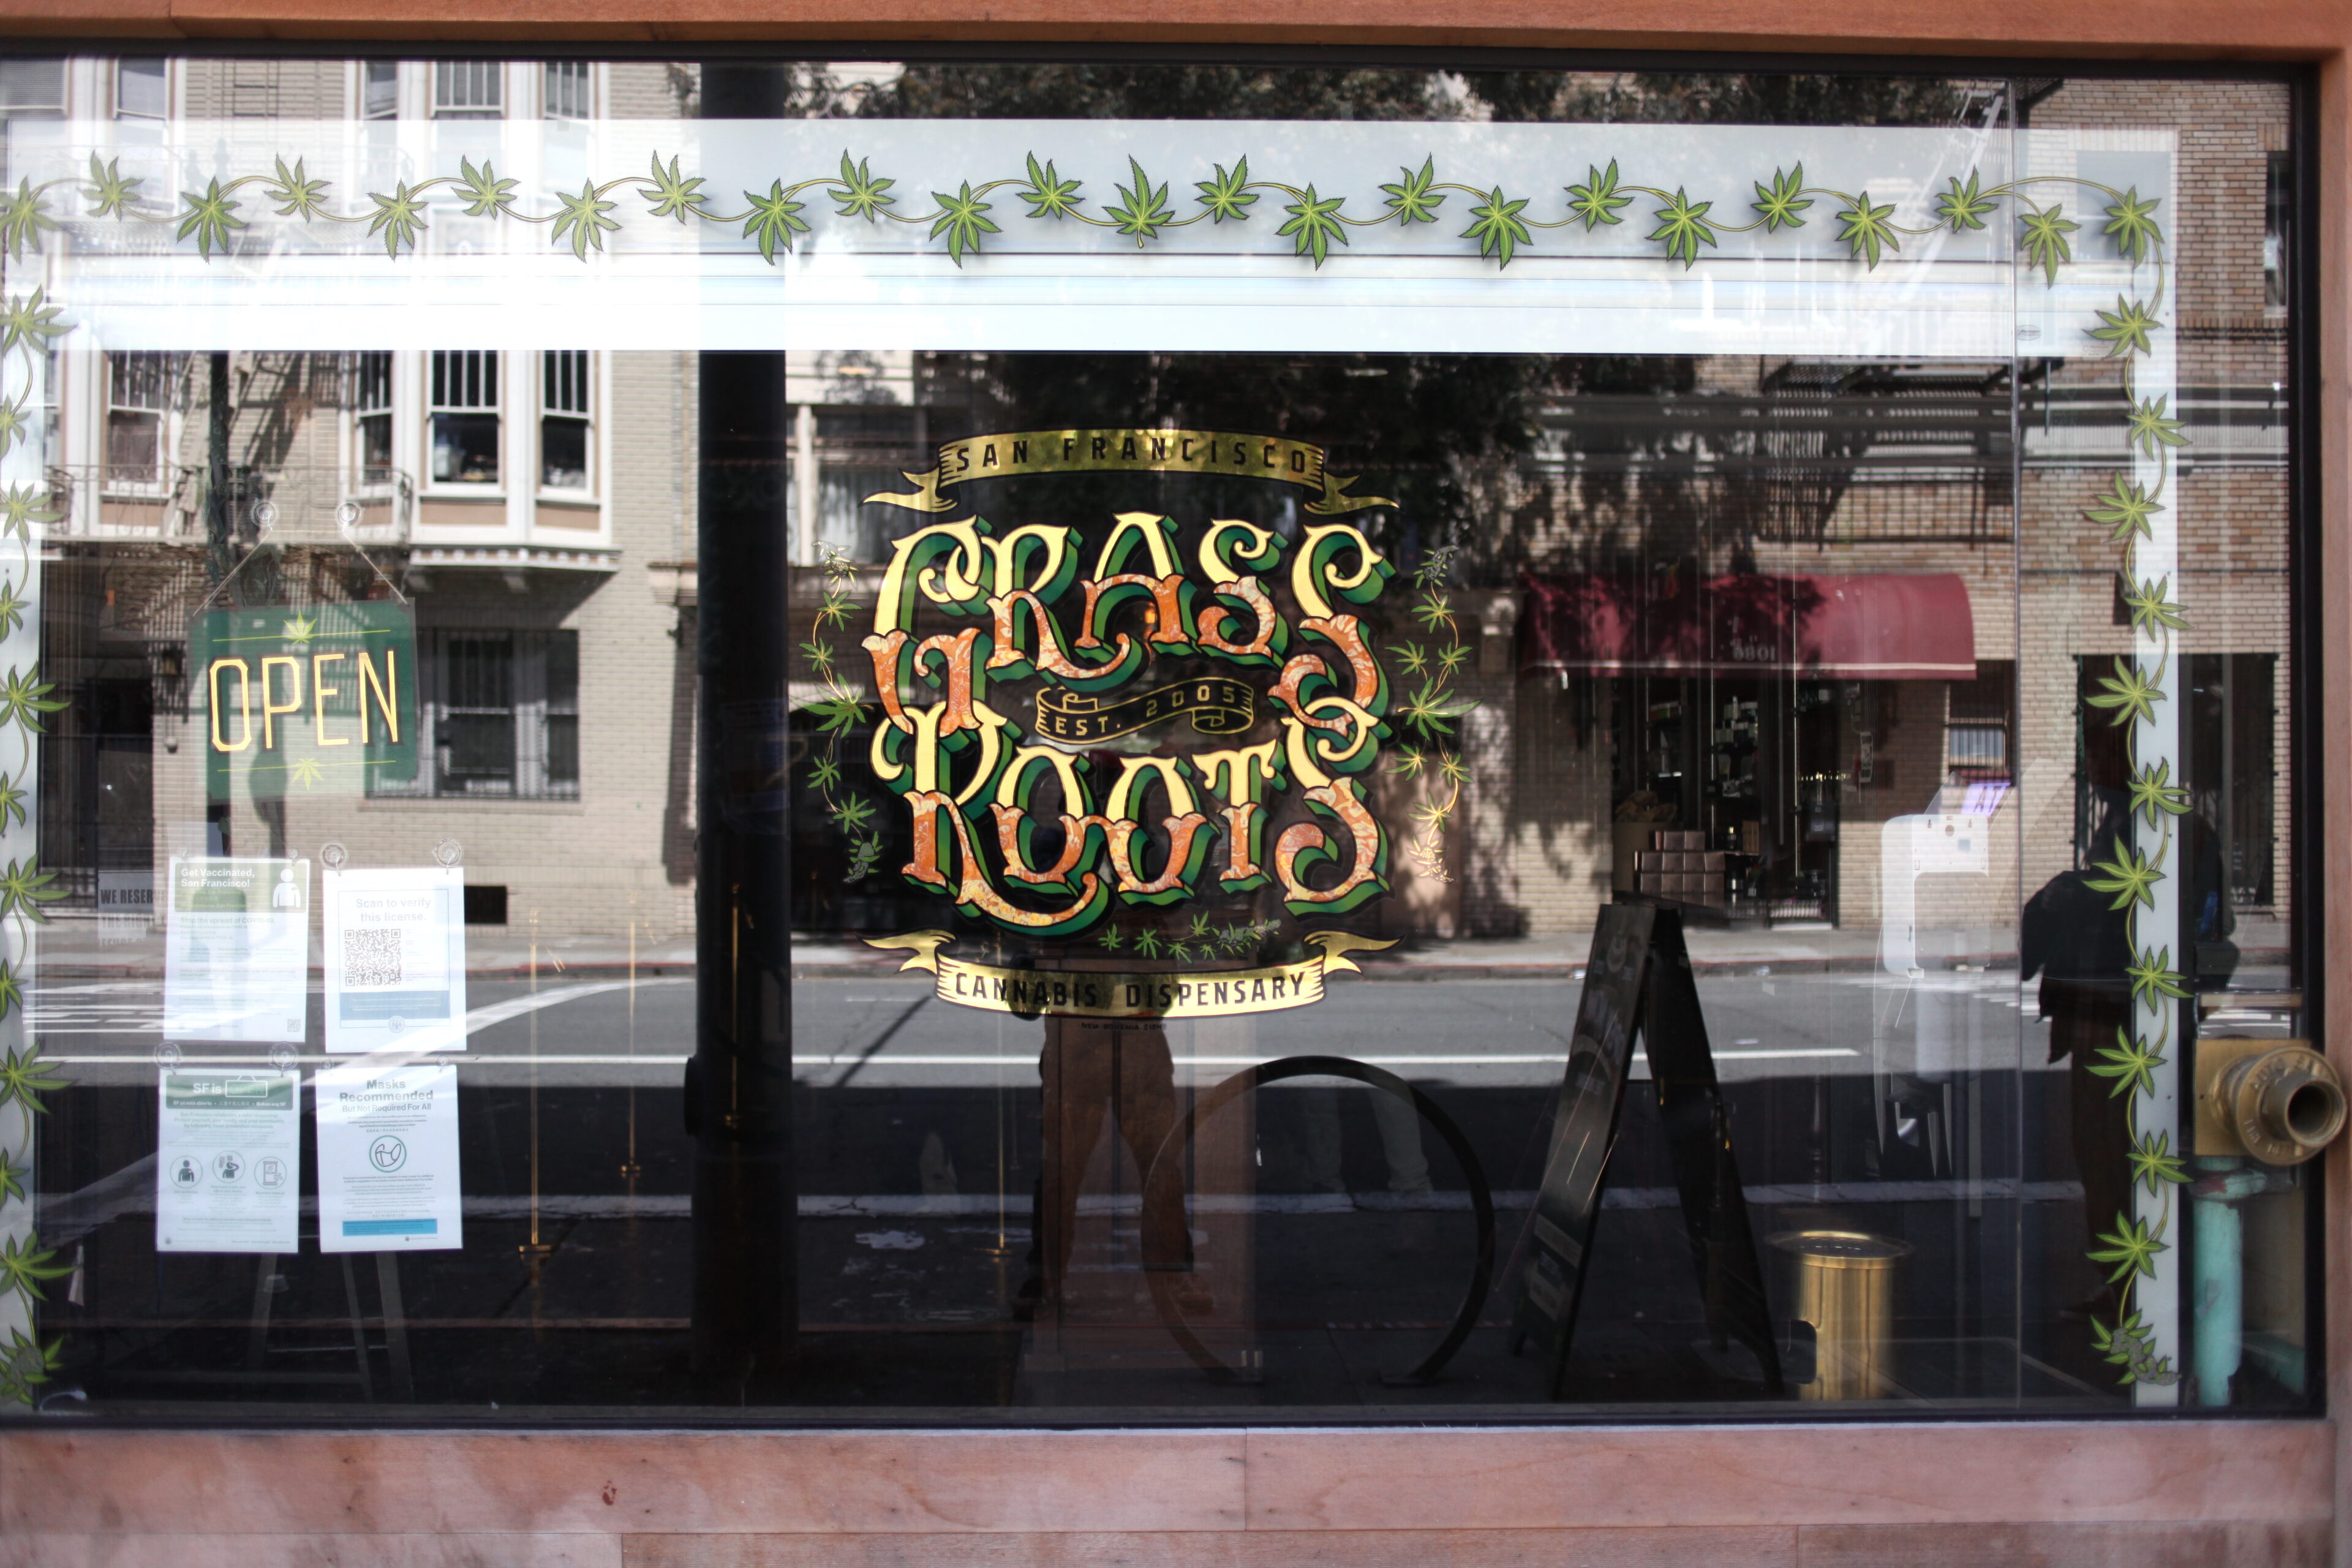 「GRASS ROOTS」のウインドウサイン